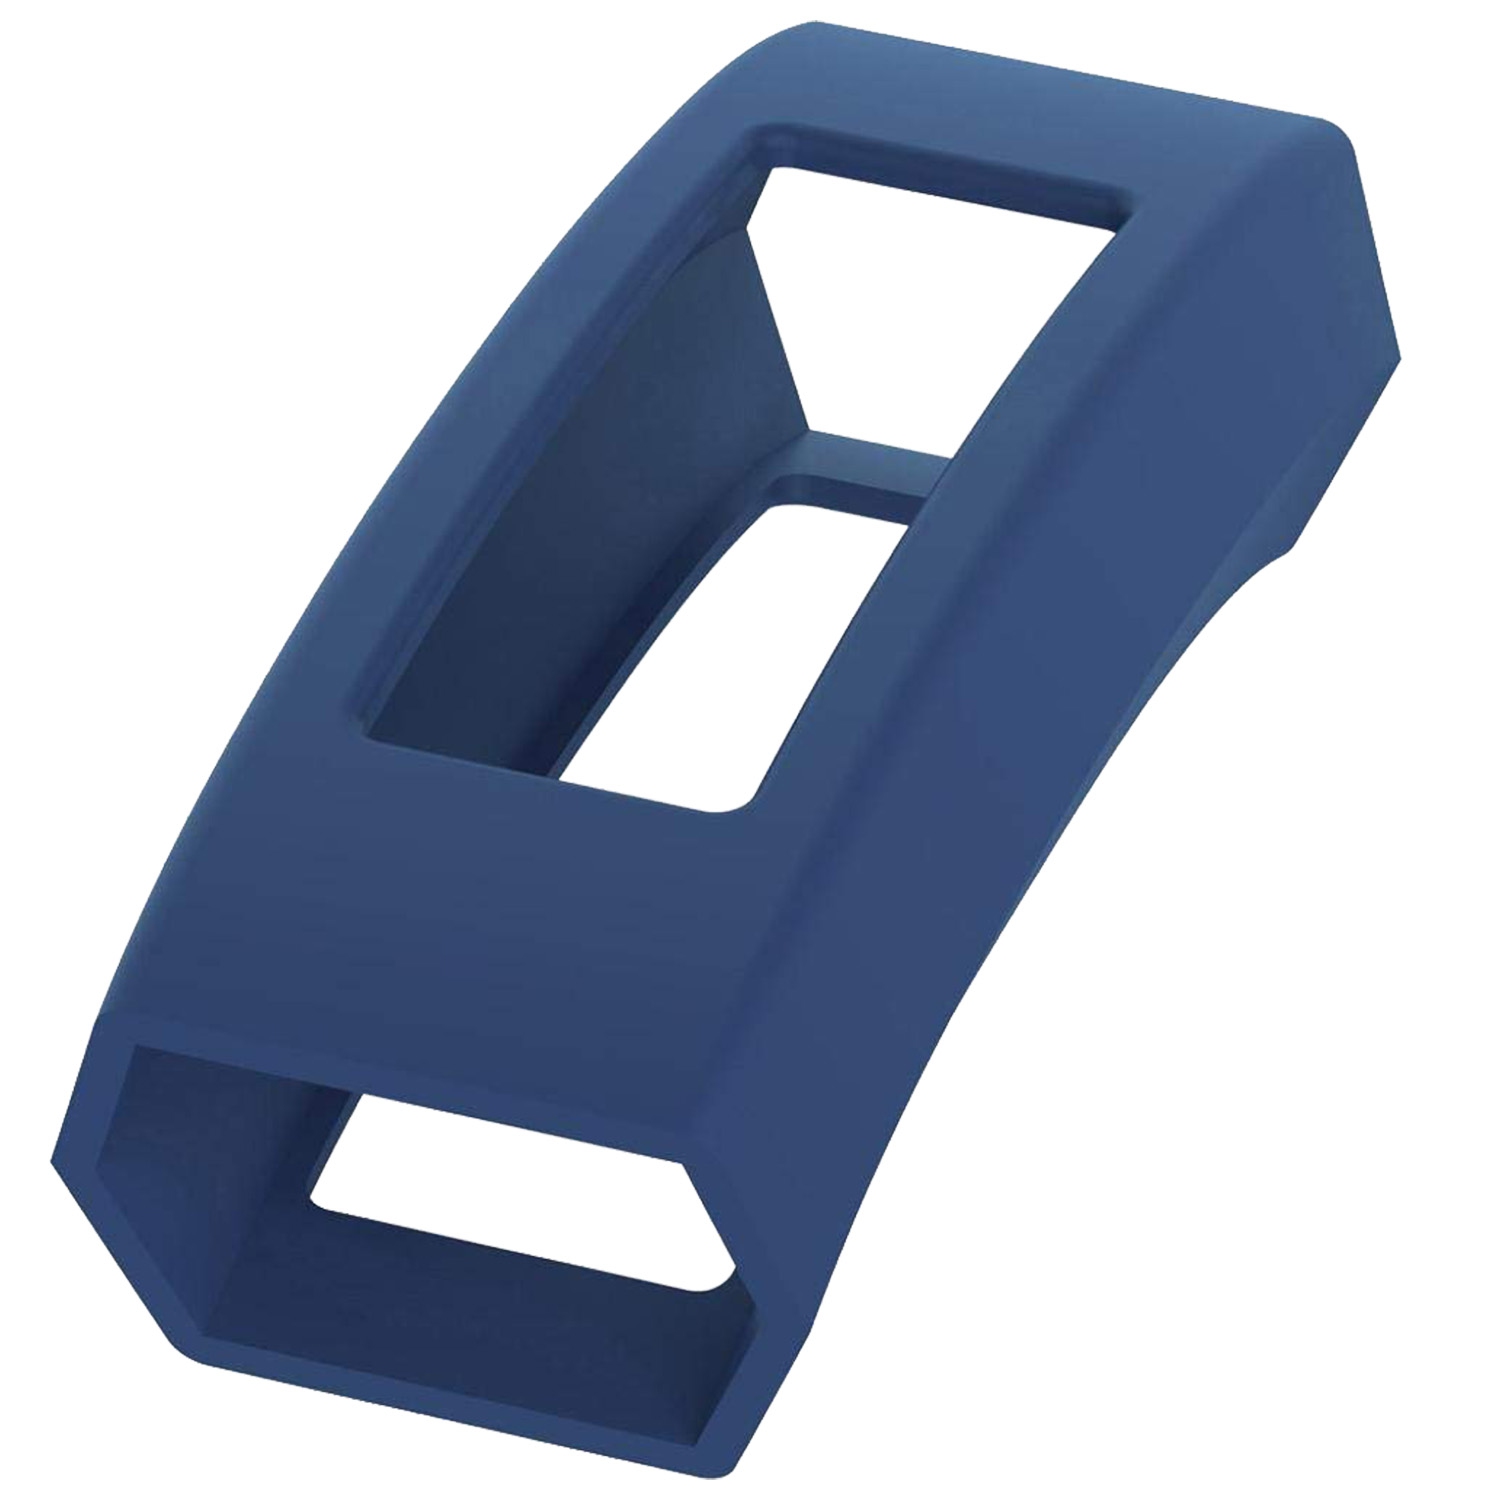 StrapsCo Silicone Rubber Protective Case Cover for Fitbit Alta & Alta HR - Blue